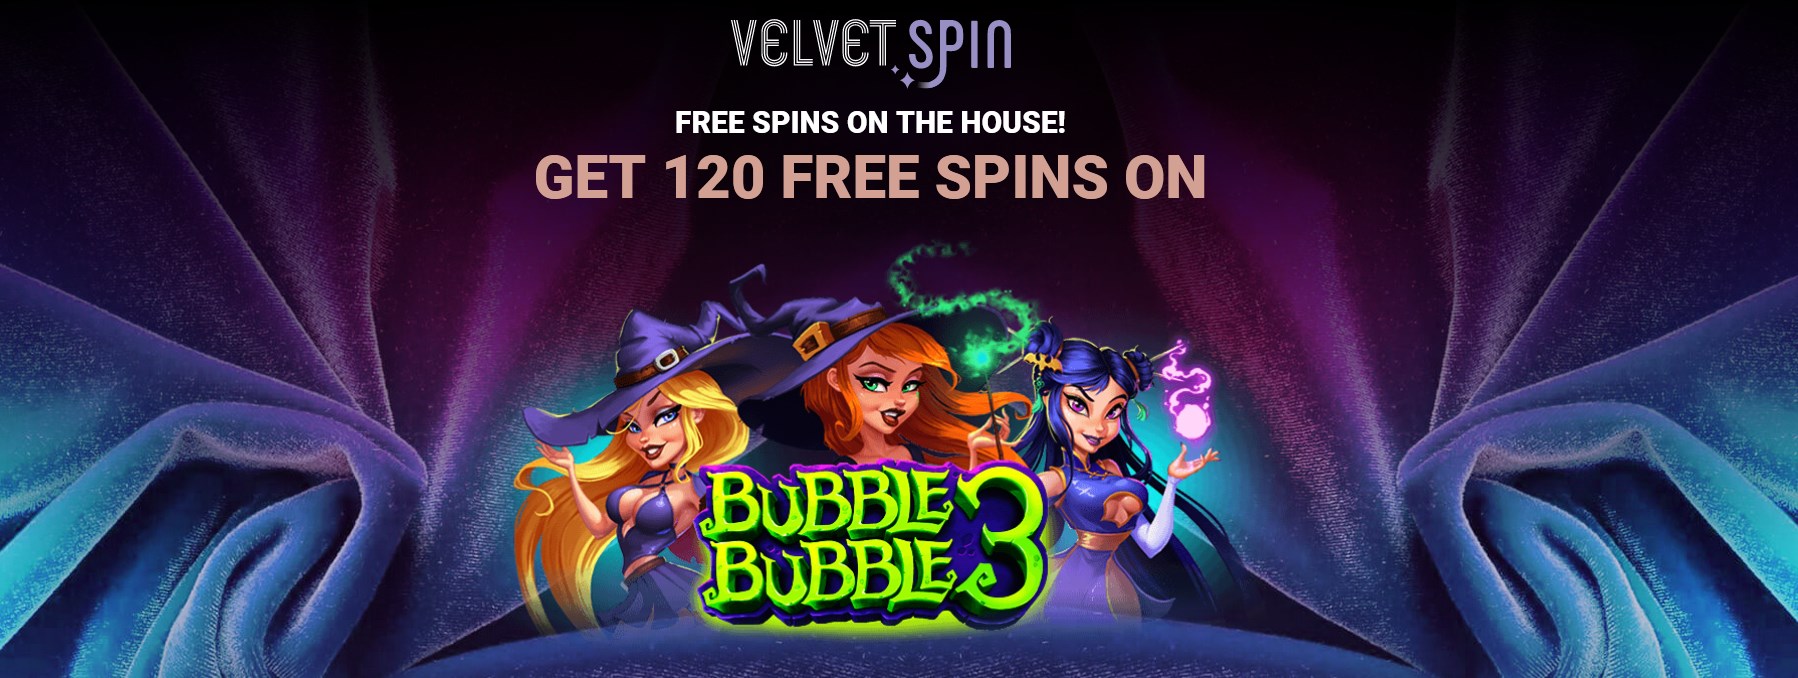 Velvet Spin Casino No Deposit Bonus